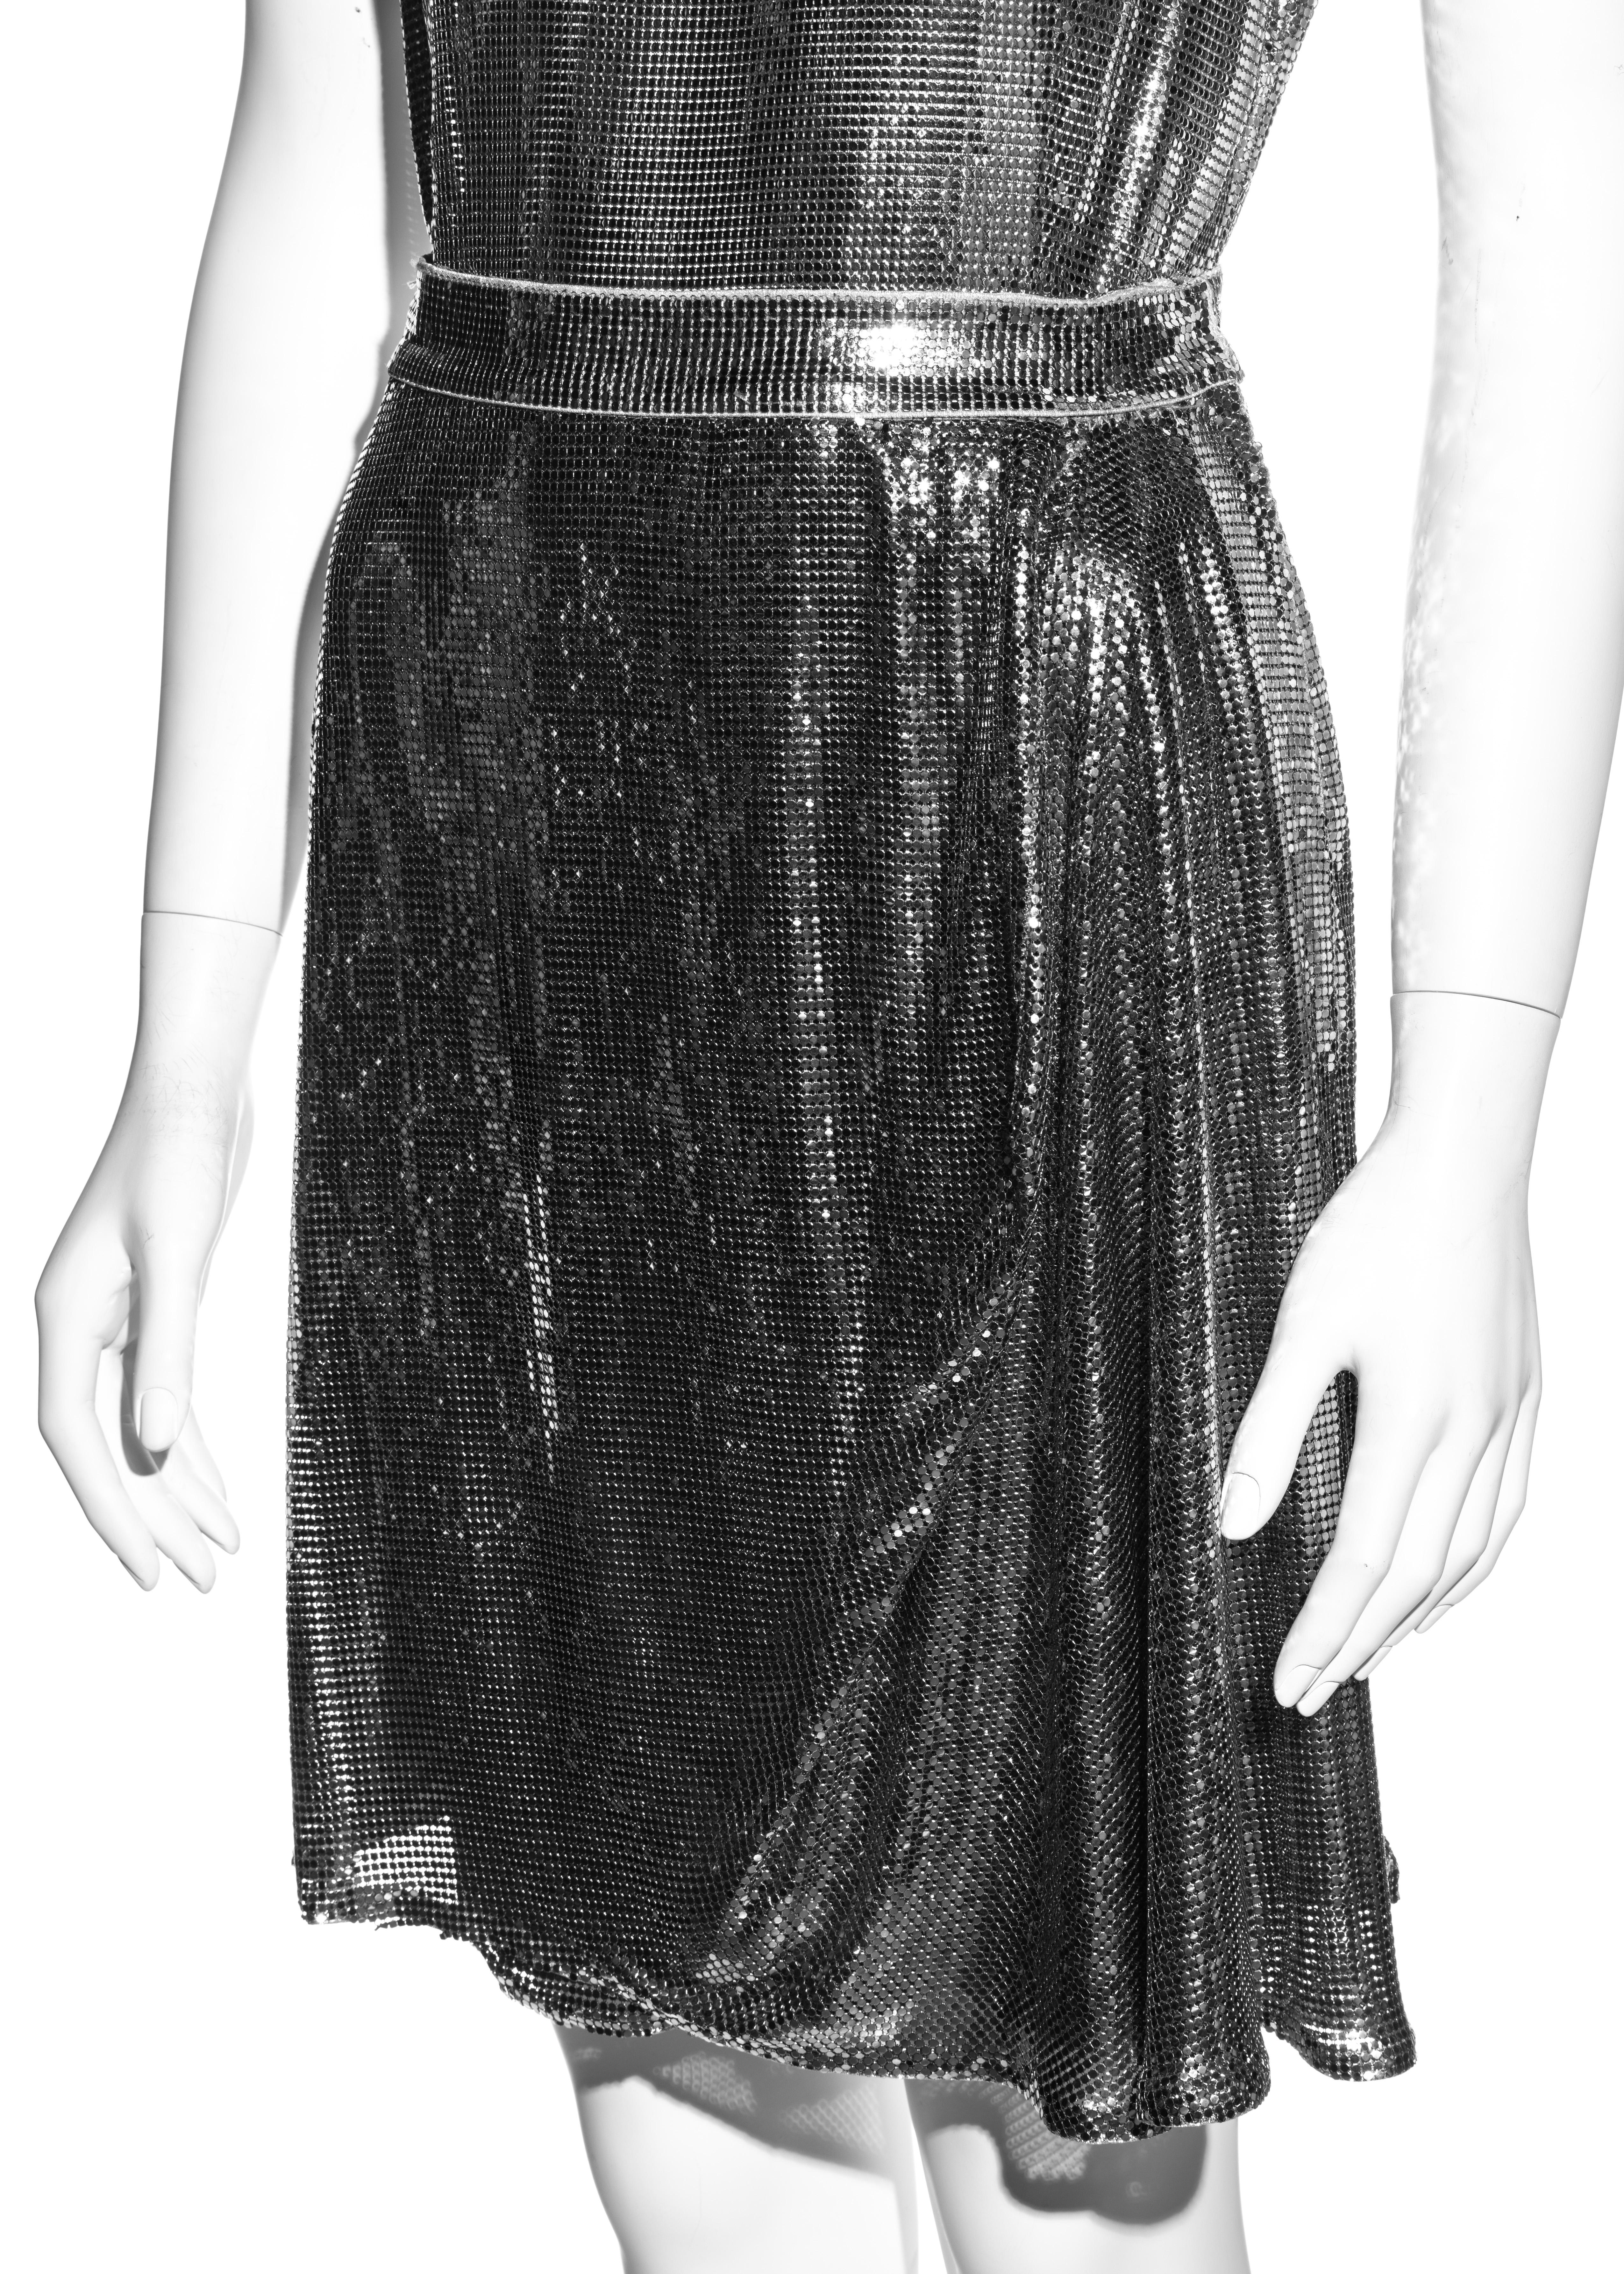 Body et jupe en cotte de mailles métallique argentée Oroton de Gianni Versace, automne-hiver 1994 Excellent état - En vente à London, GB